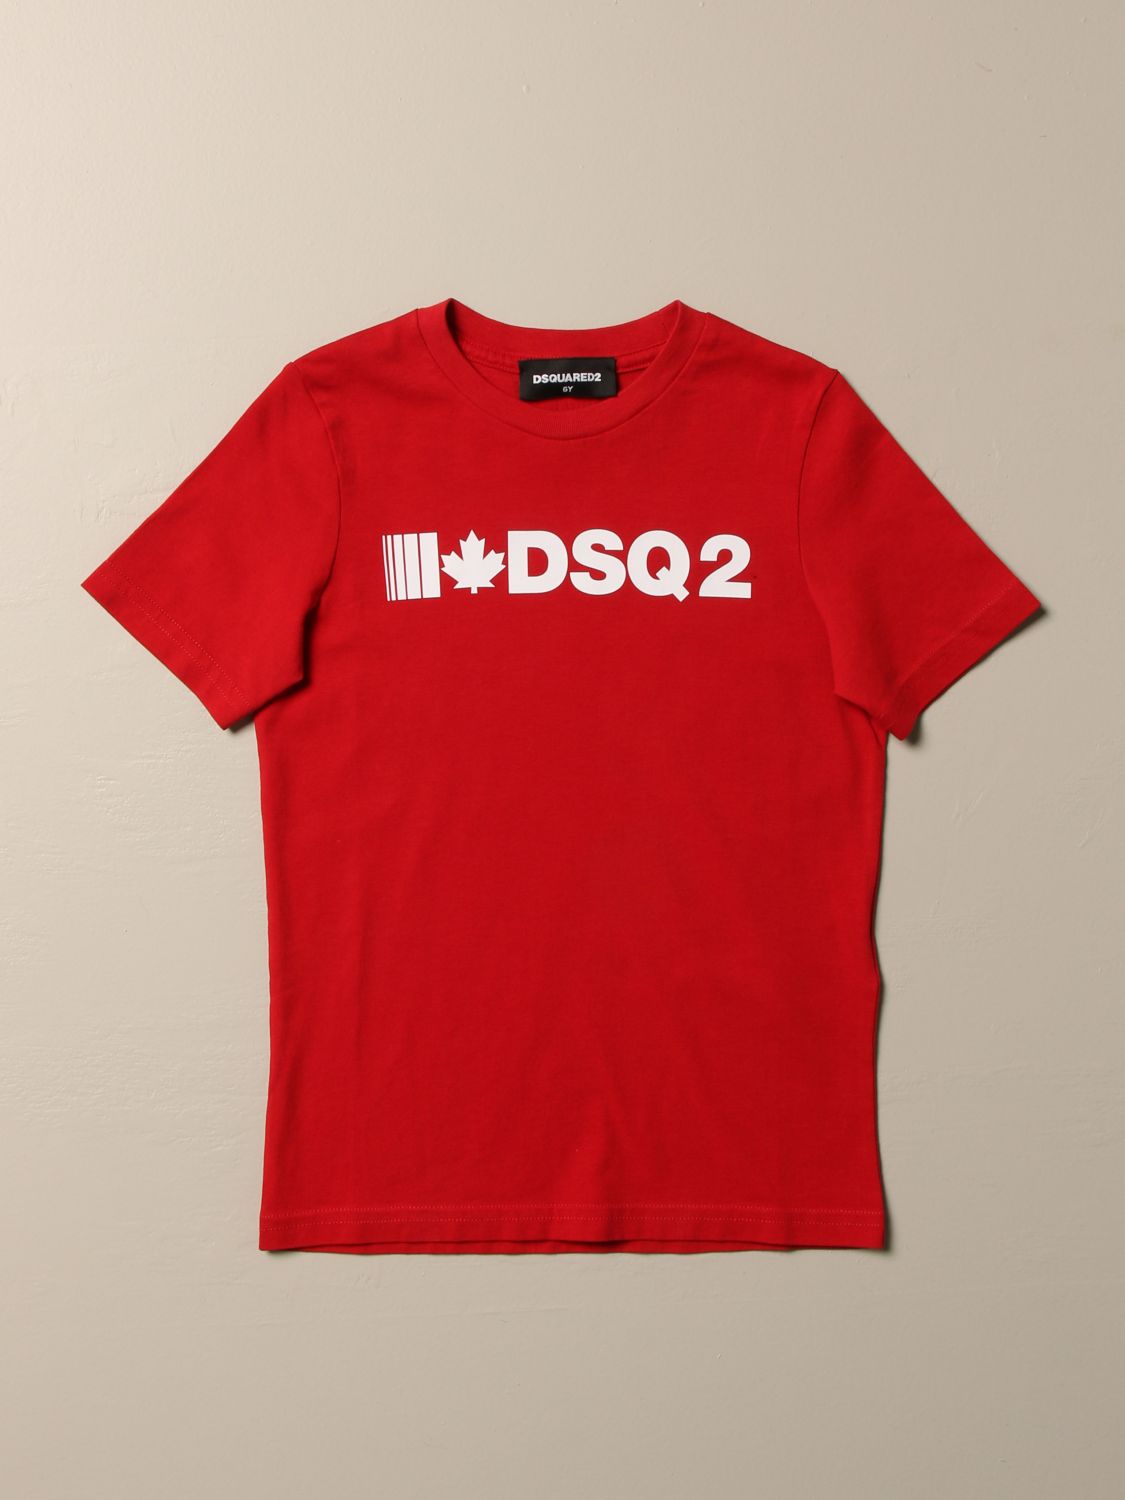 dsq2 shirt